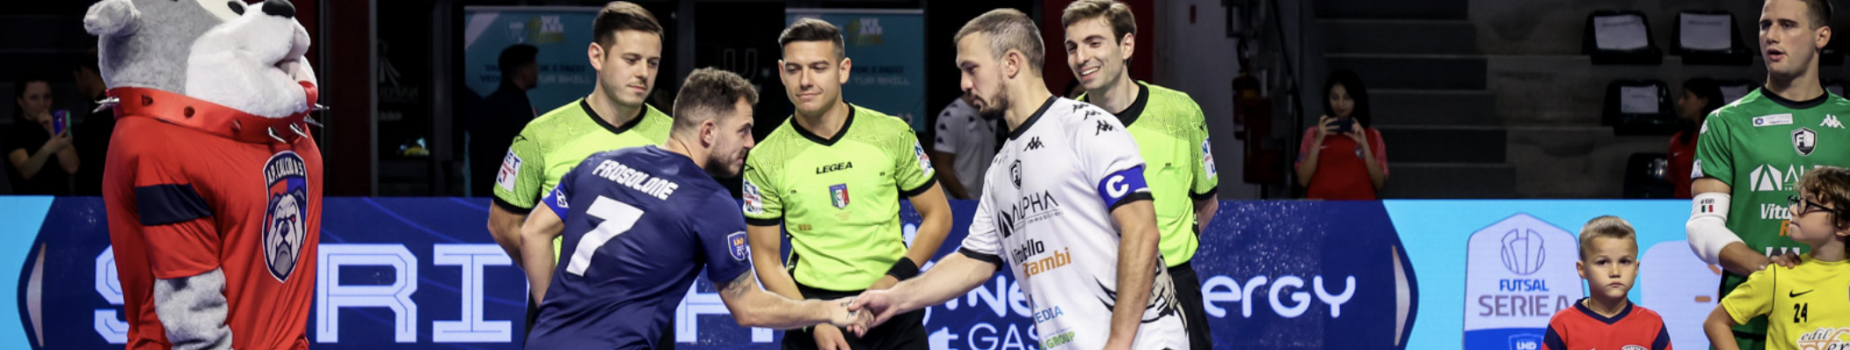 Annullata Futsal Cesena-A.P. C5, i campani si ritirano dal campionato